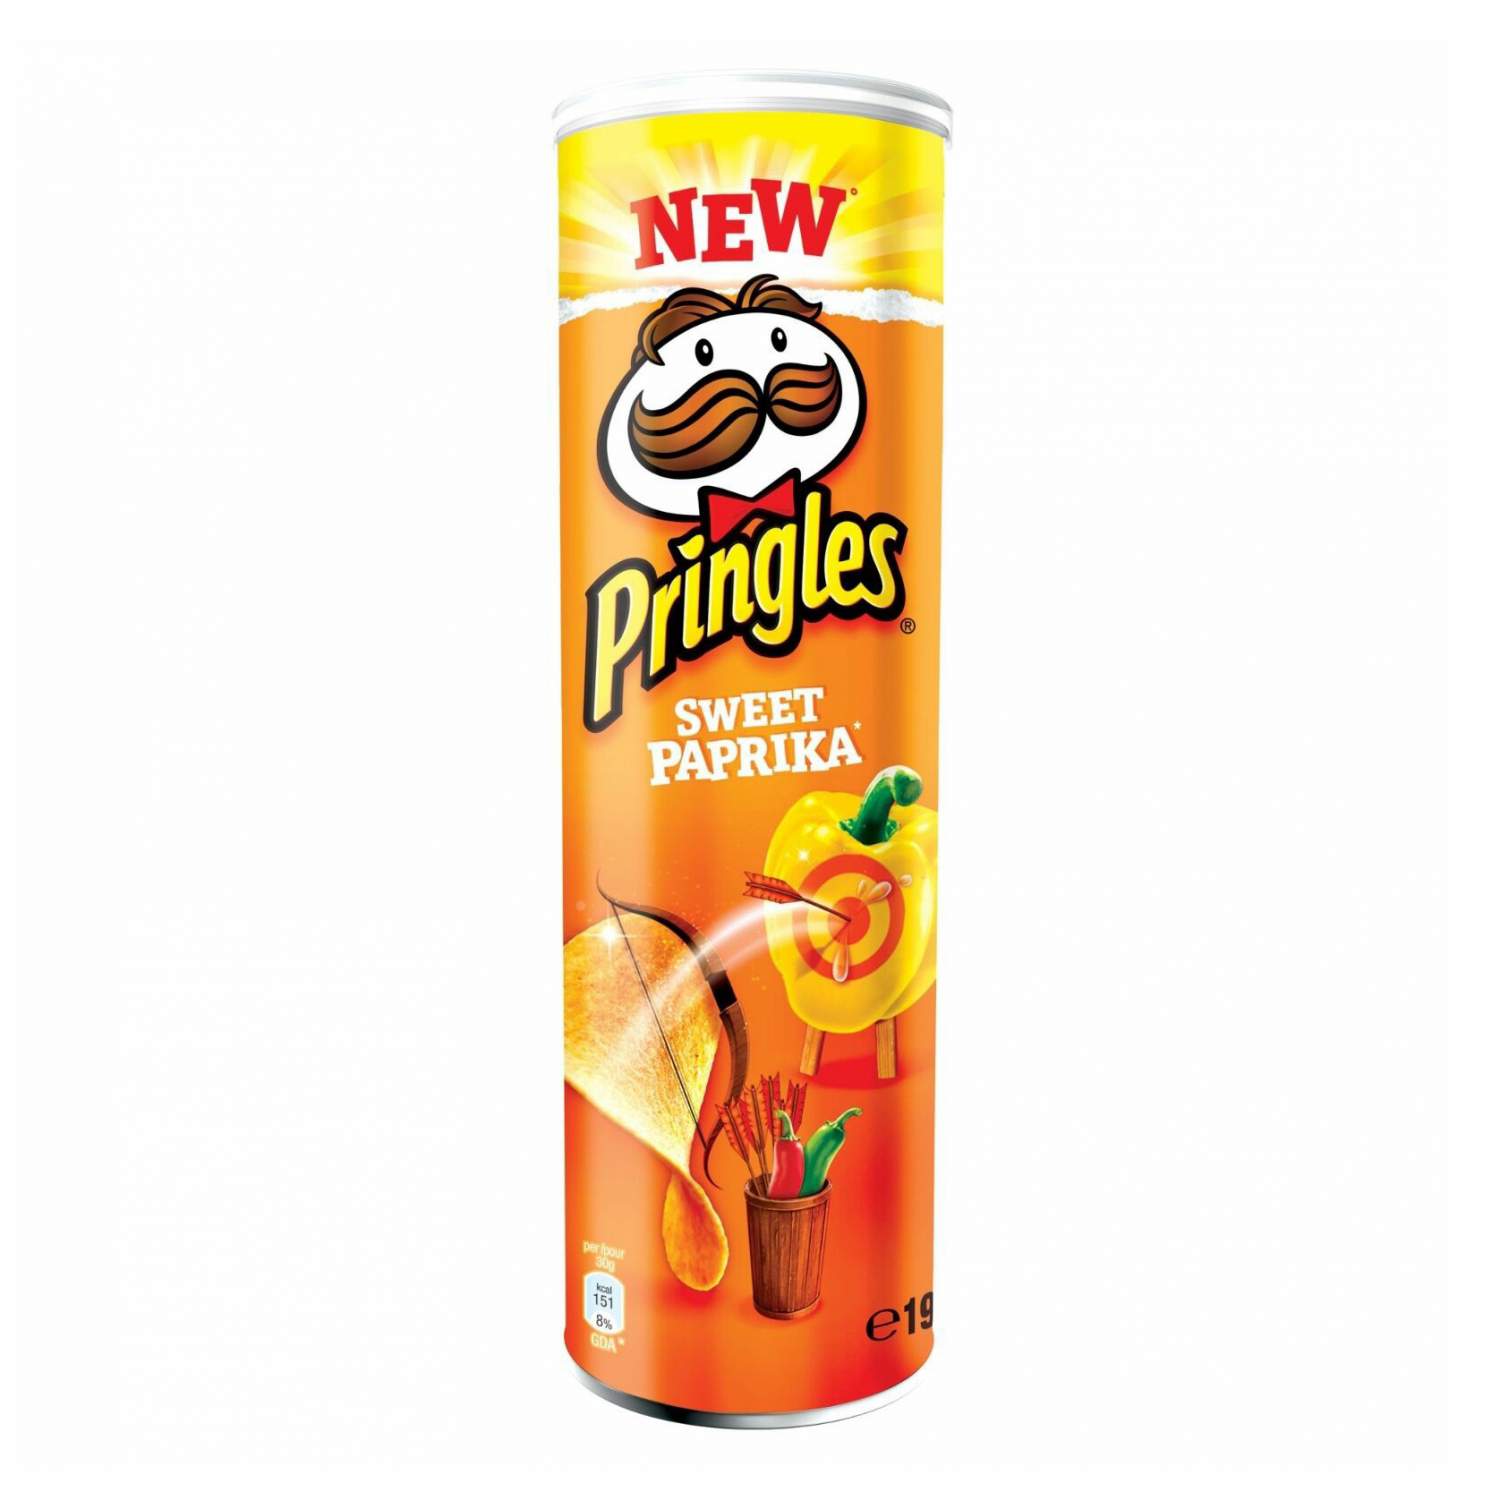 15 фактов про Pringles. В коробке похоронили создателя